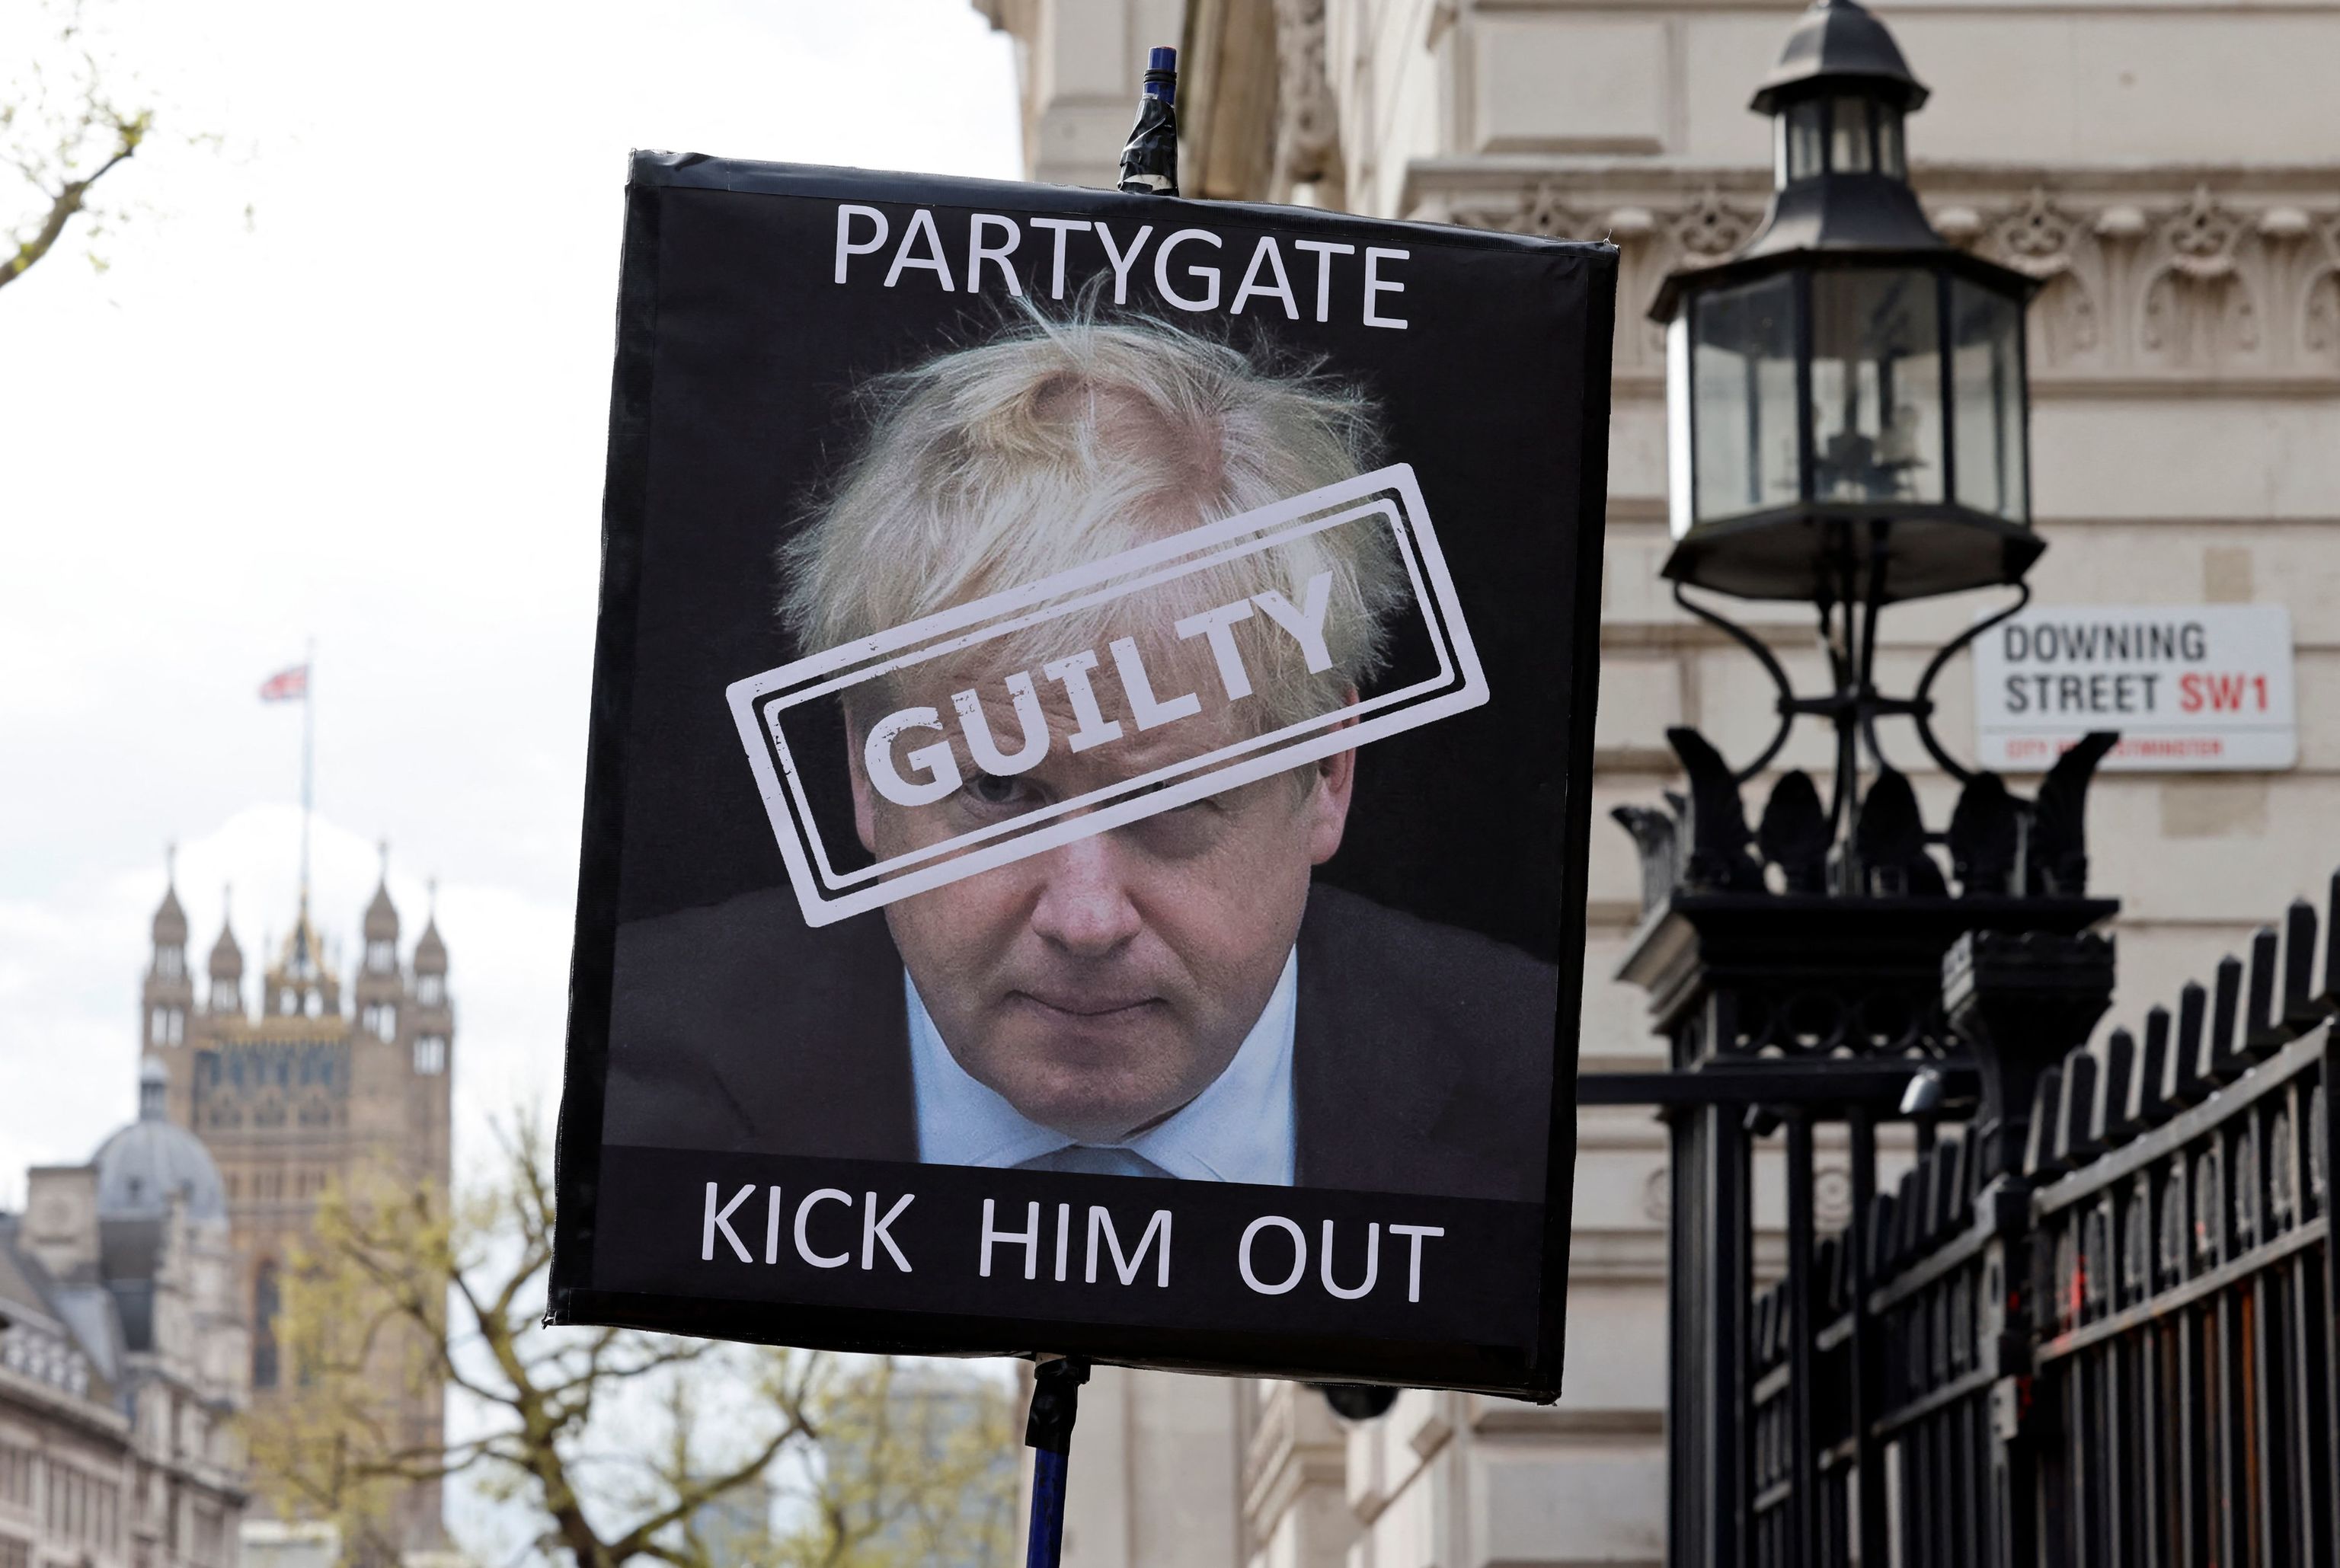 Dimite el ‘número dos’ de Justicia británico en una afrenta a Boris Johnson por la multa del Partygate